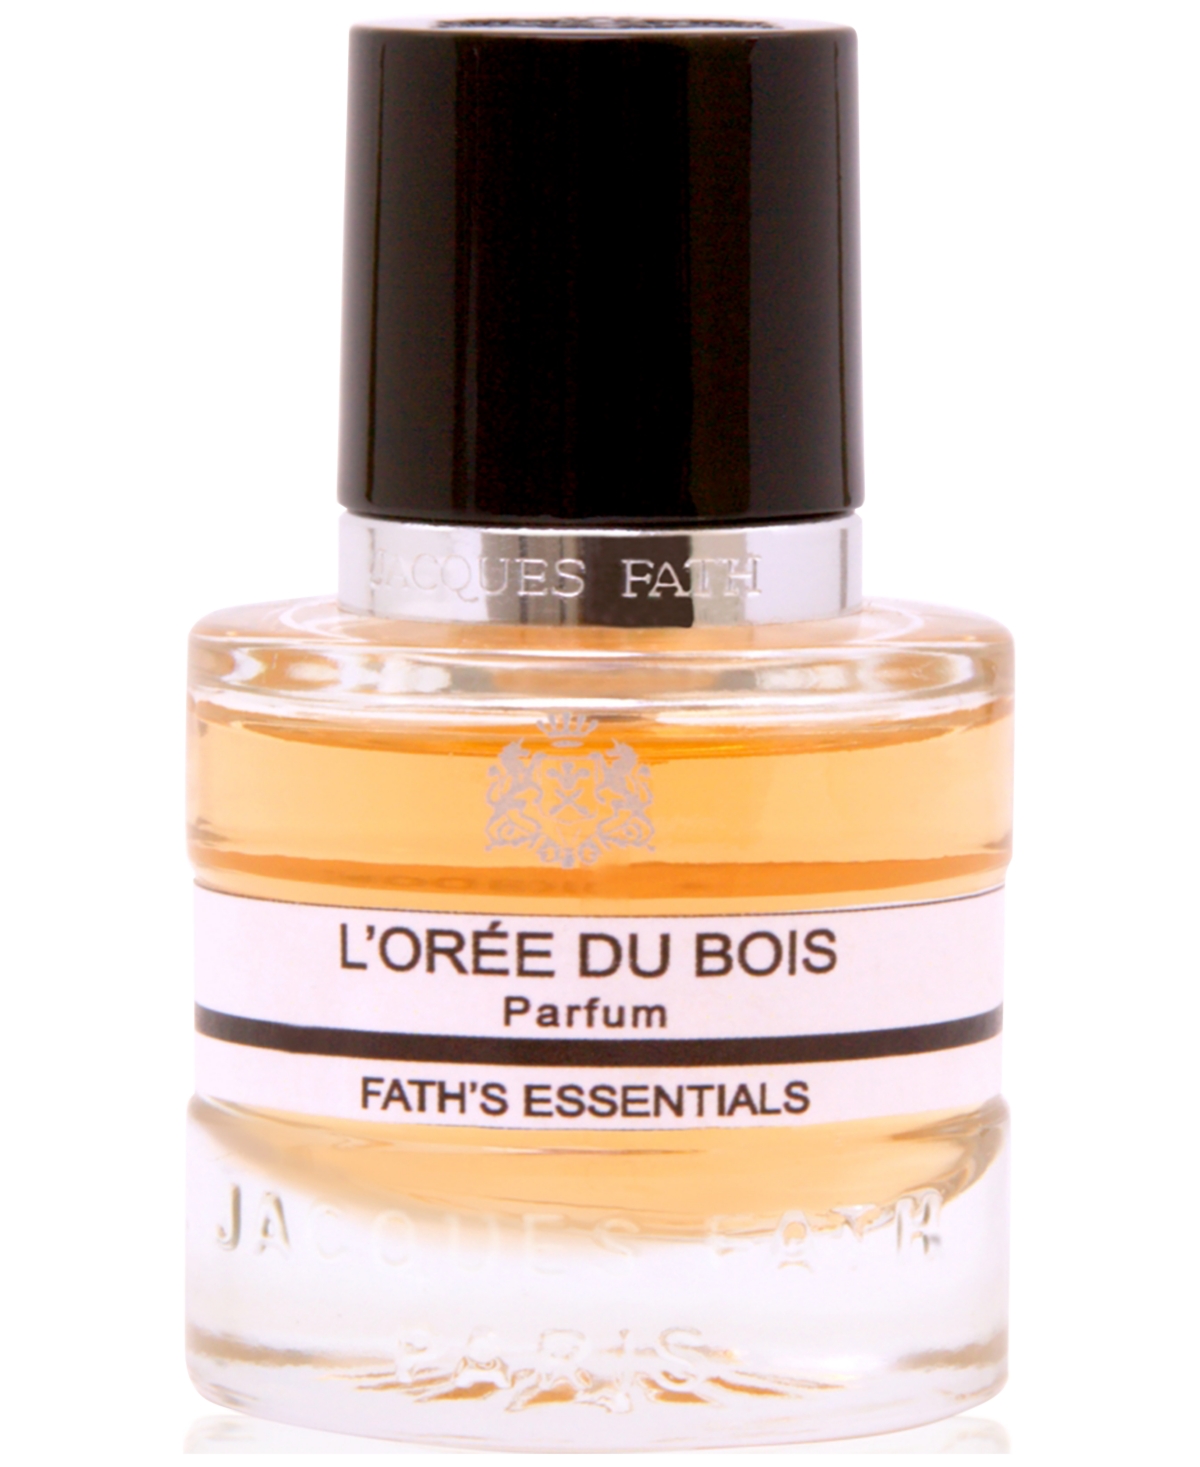 L'Oree du Bois Parfum, 0.5 oz.